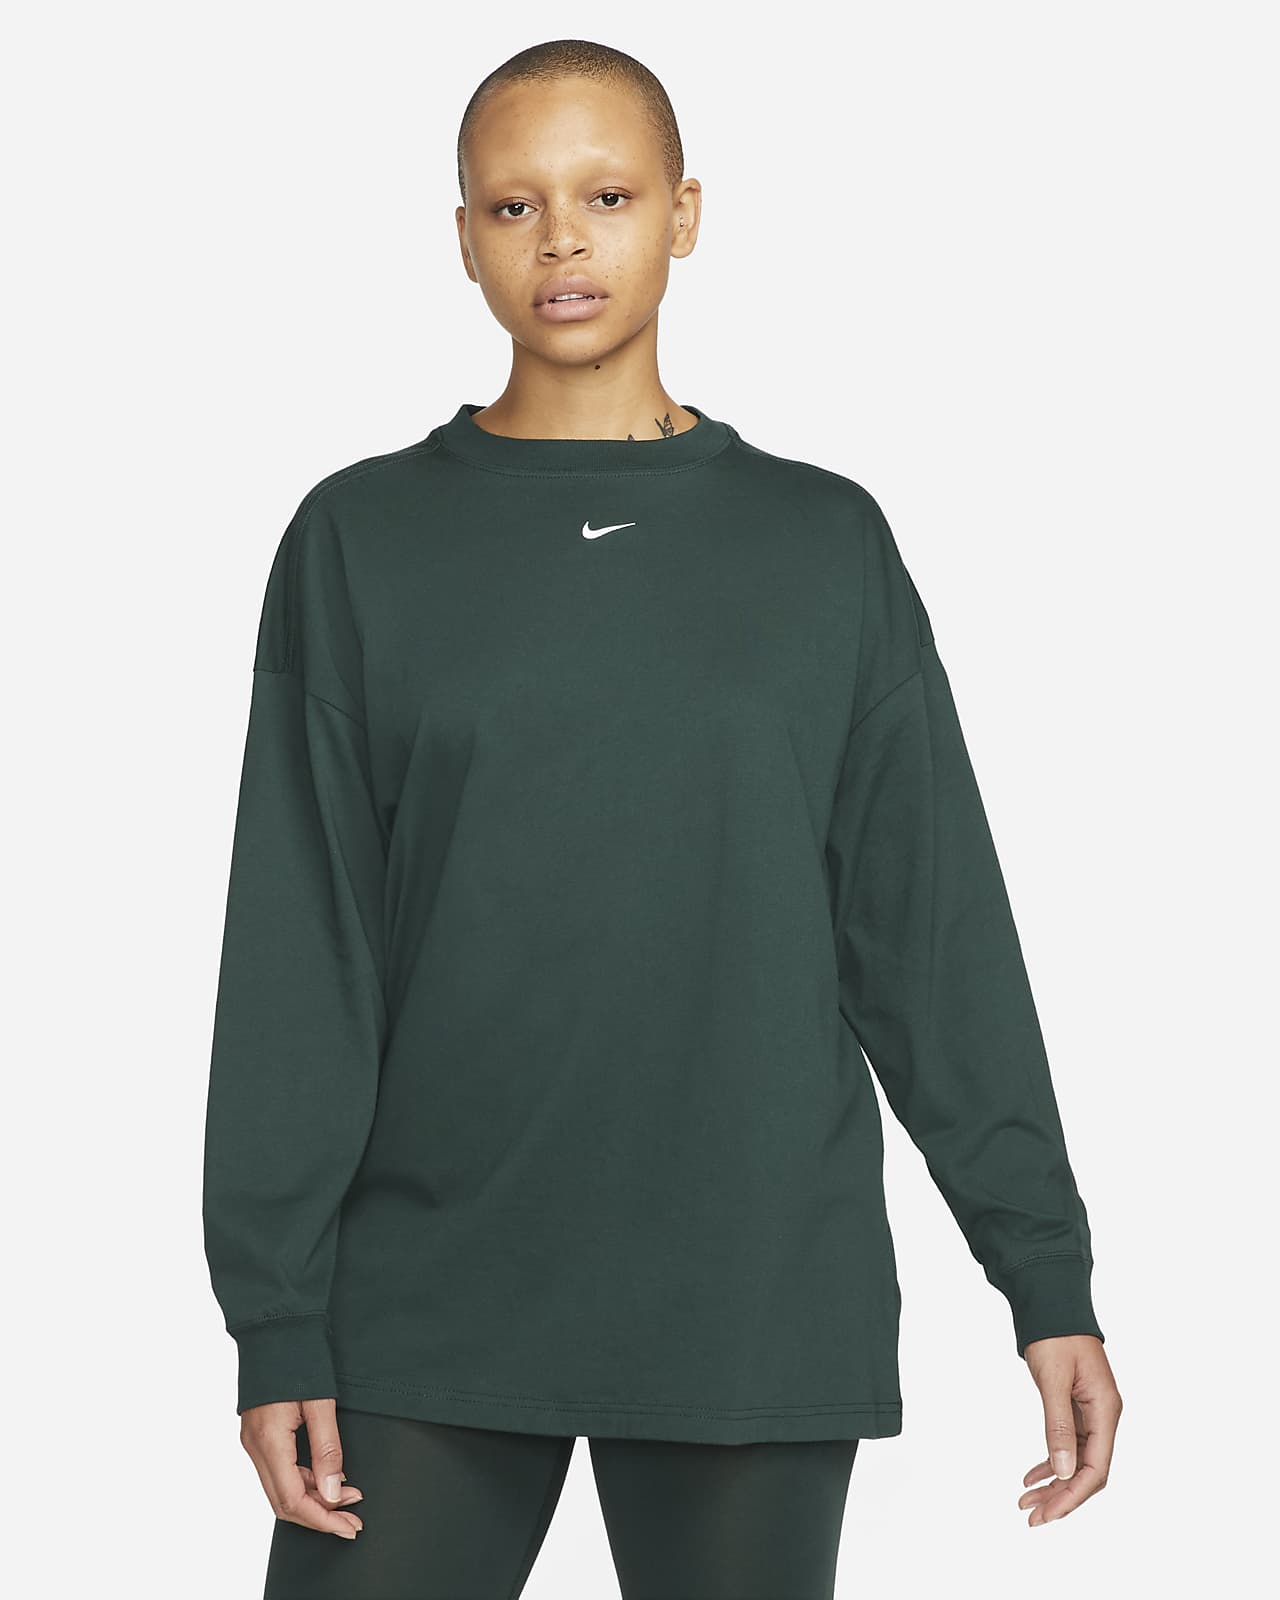 Women's Nike Sportswear Essential T Shirt